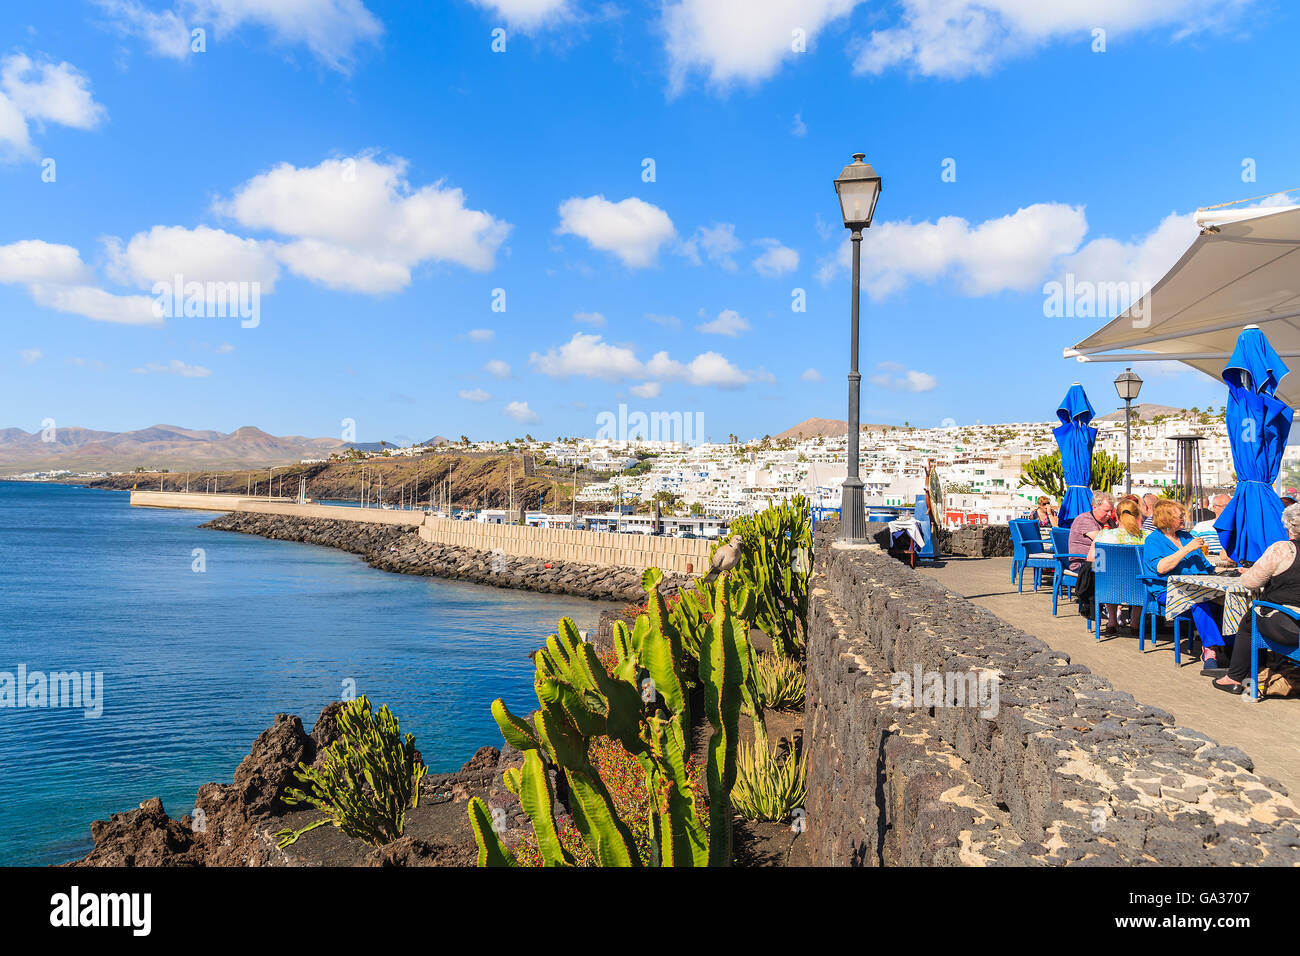 PUERTO DEL CARMEN, Lanzarote Island - Jan 17, 2015: turisti potrete cenare nel ristorante locale sulla costa dell'isola di Lanzarote in Puerto del Carmen town, Spagna. Le isole Canarie sono meta di vacanze. Foto Stock